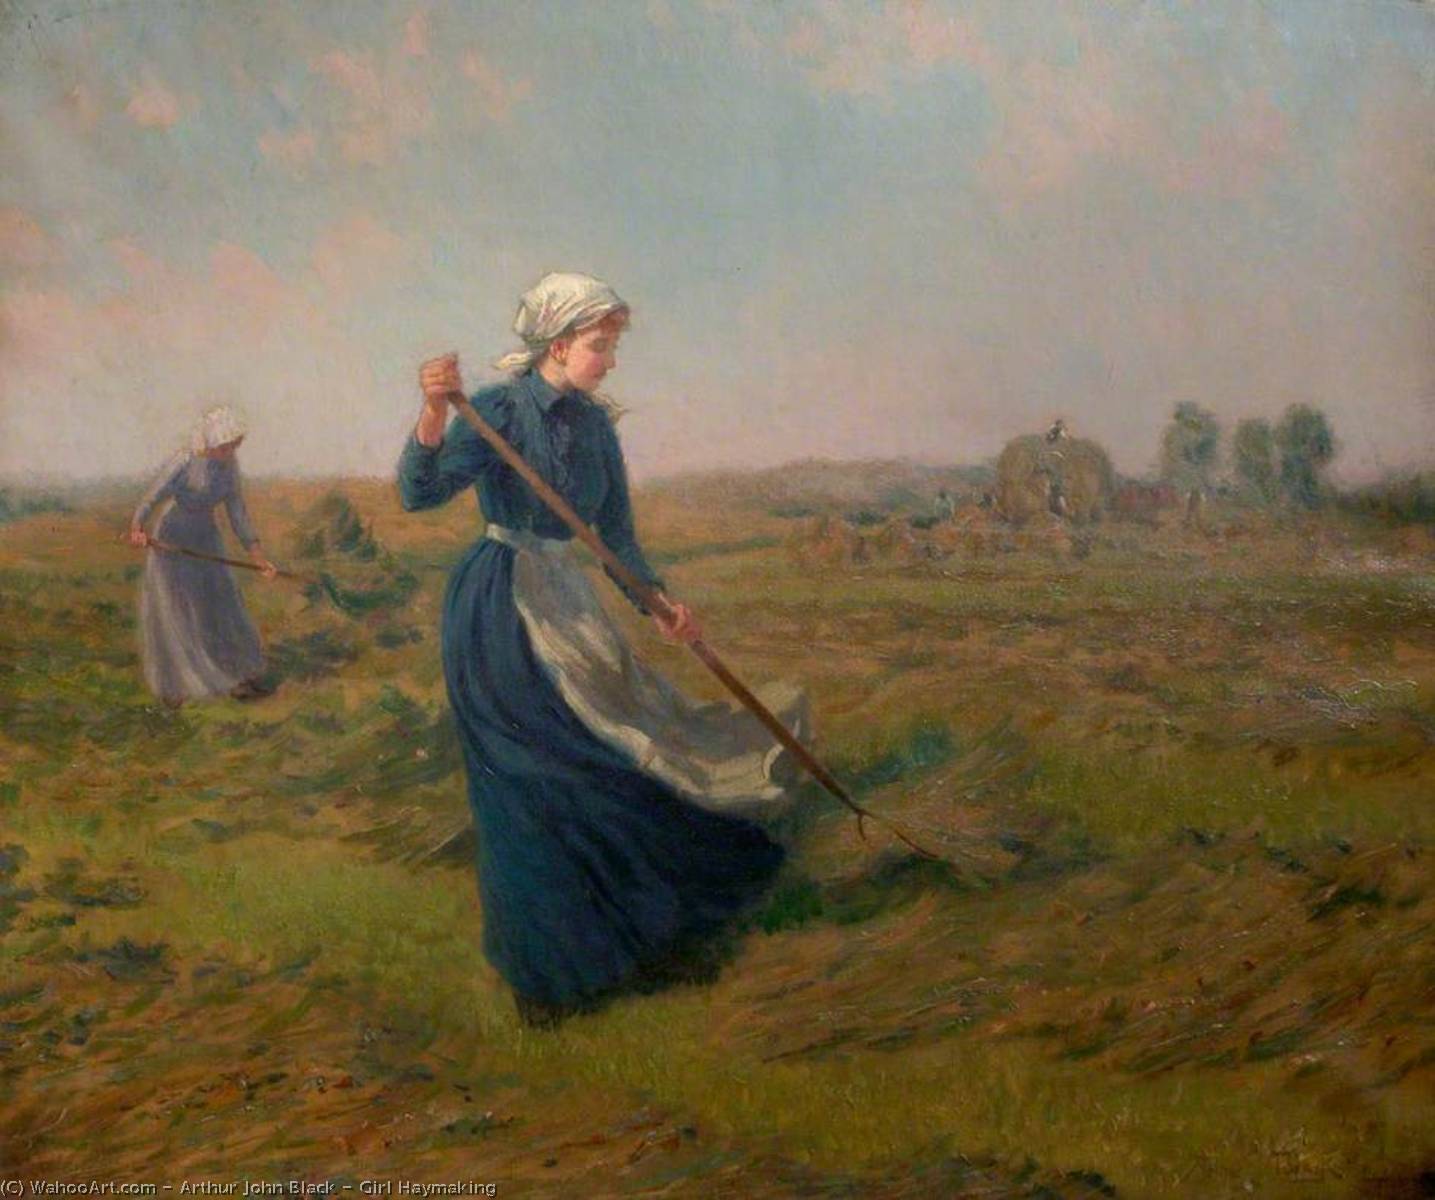 Girl Haymaking by Arthur John Black Arthur John Black | ArtsDot.com